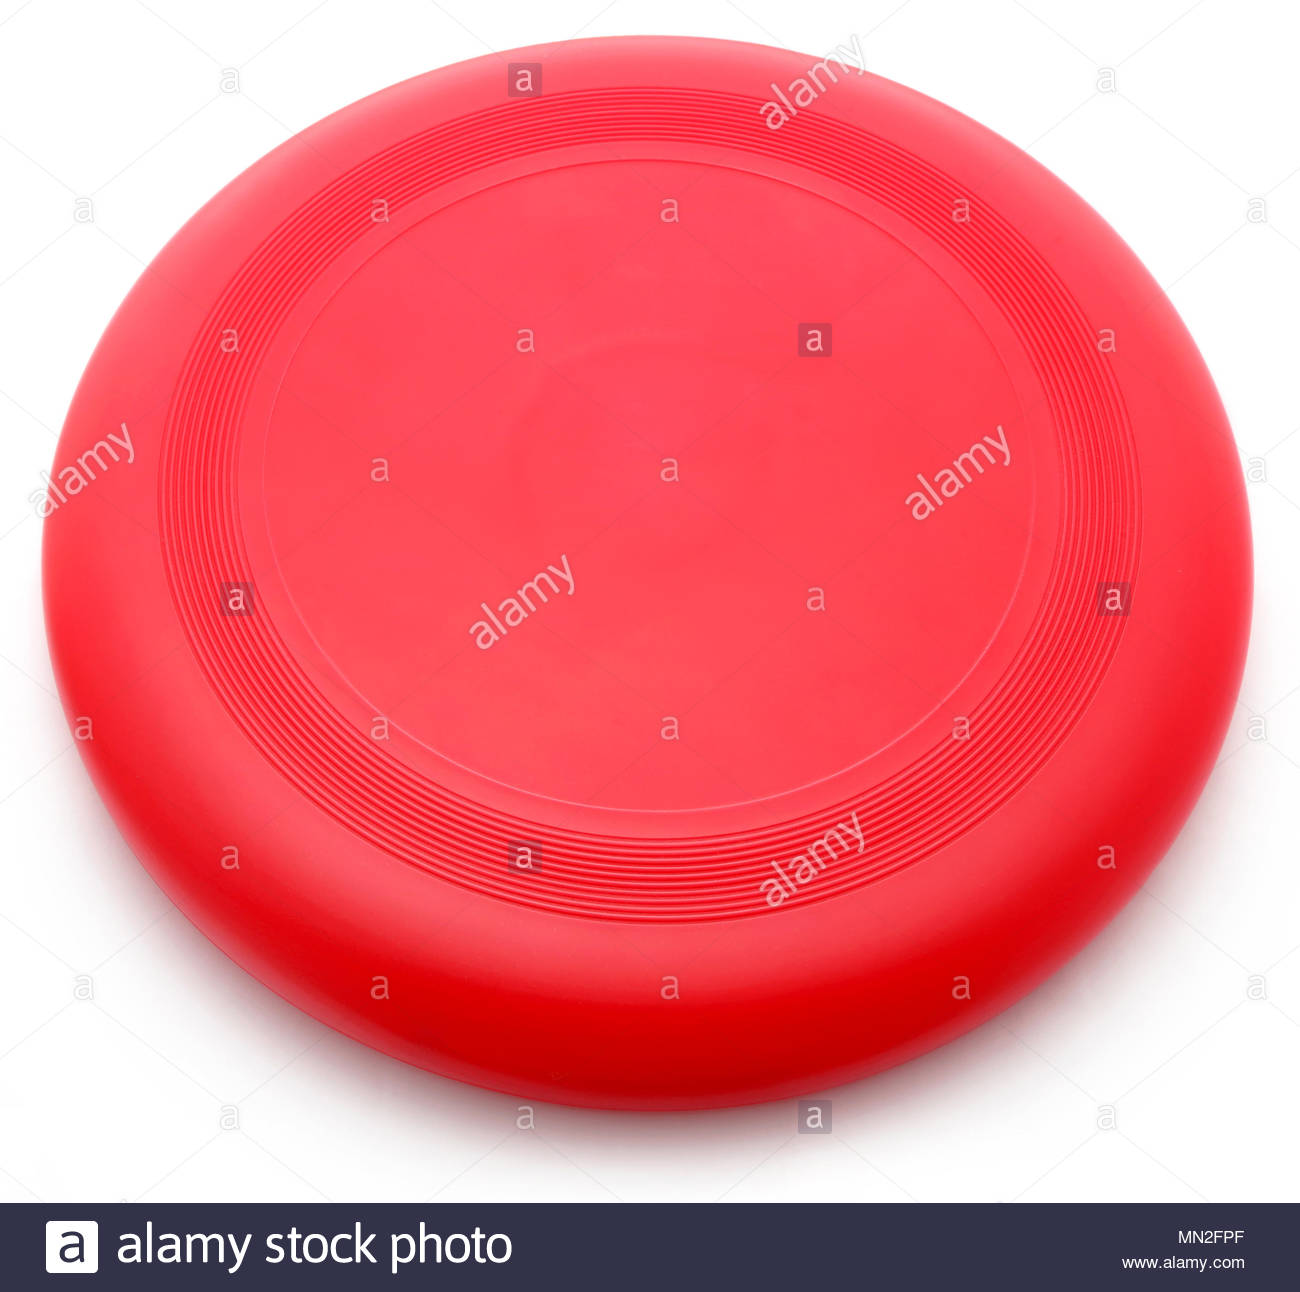 imate frisbee background